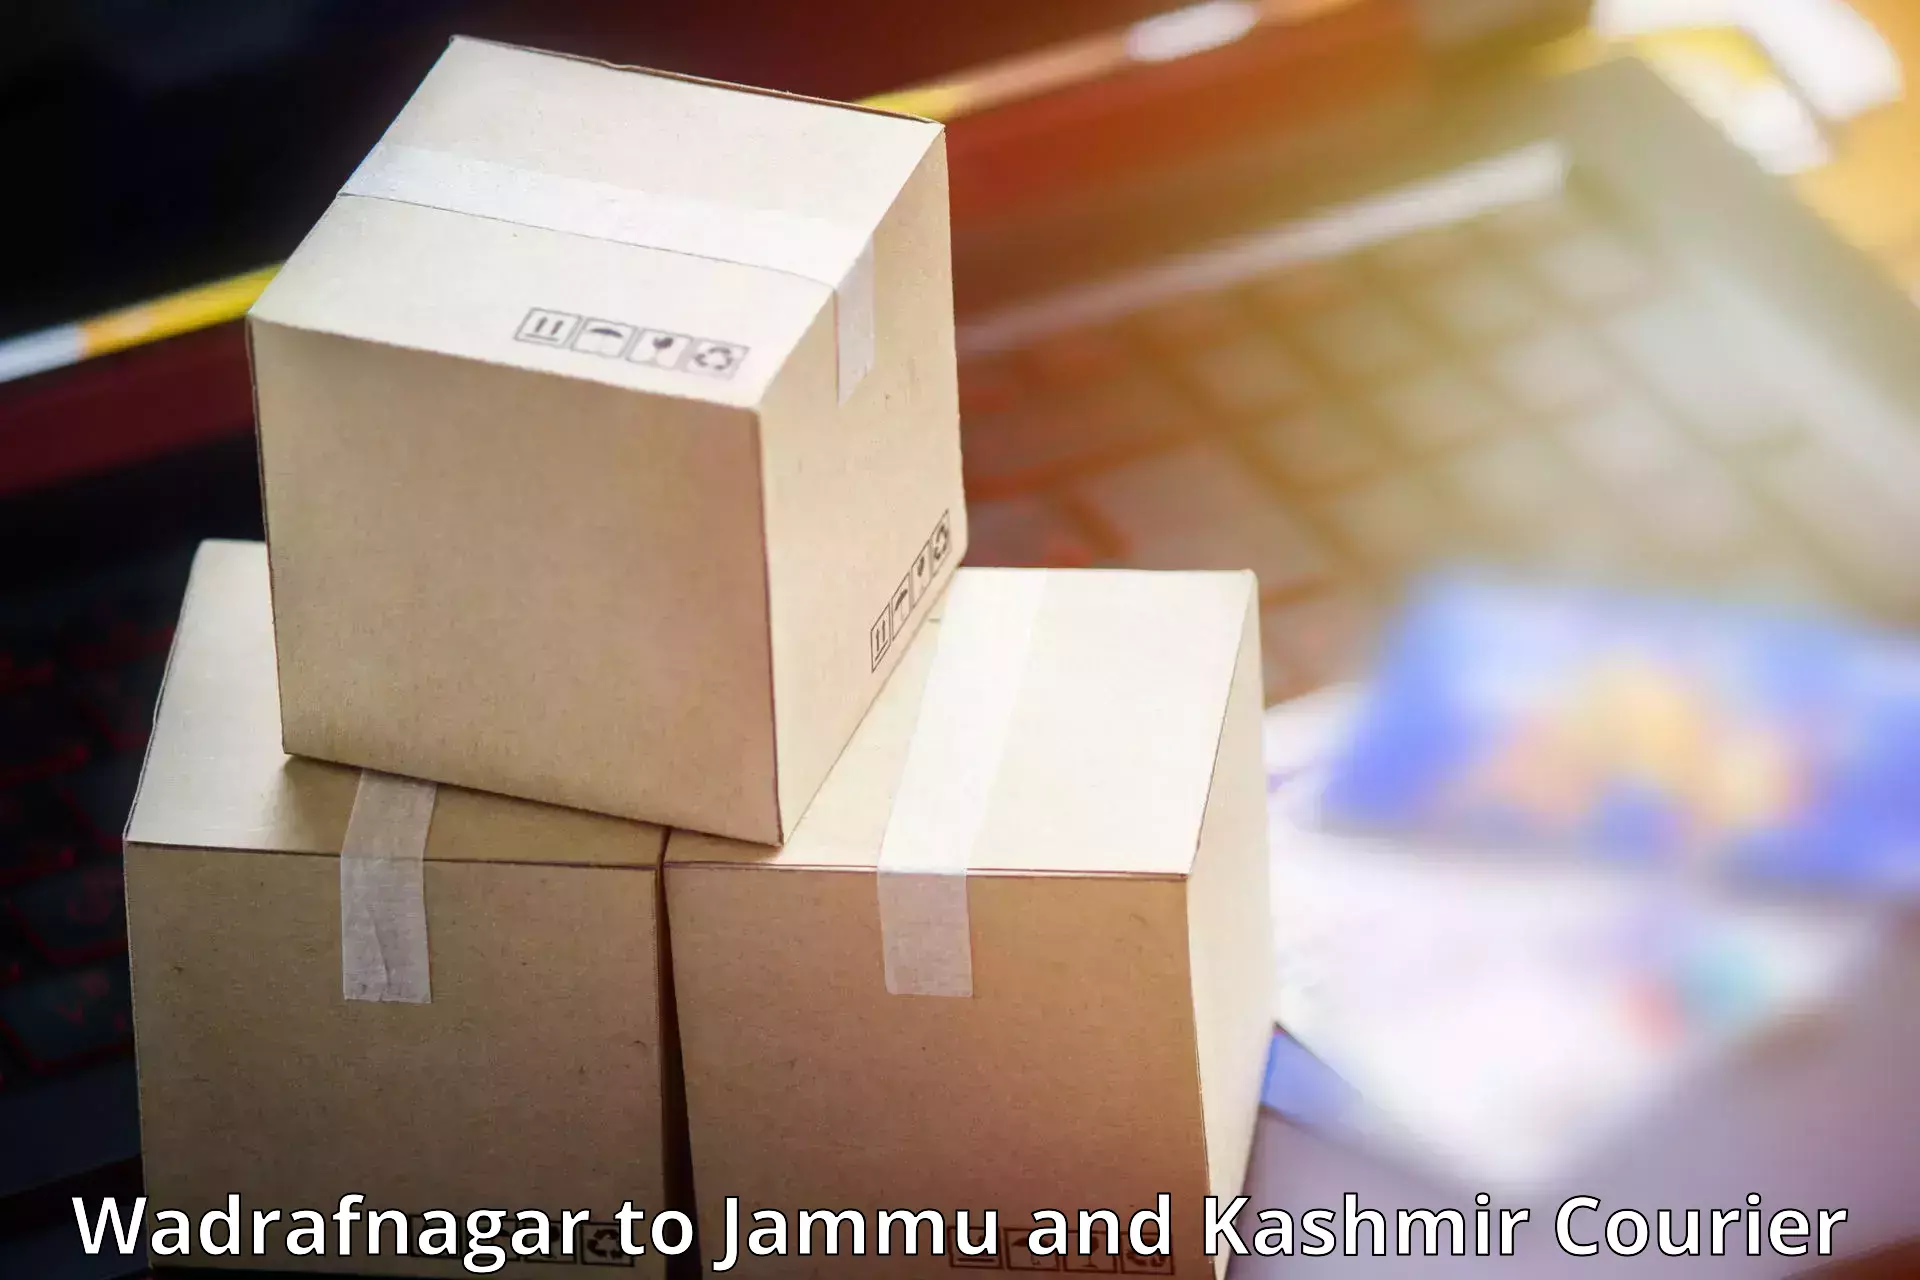 Customized delivery options Wadrafnagar to Kargil